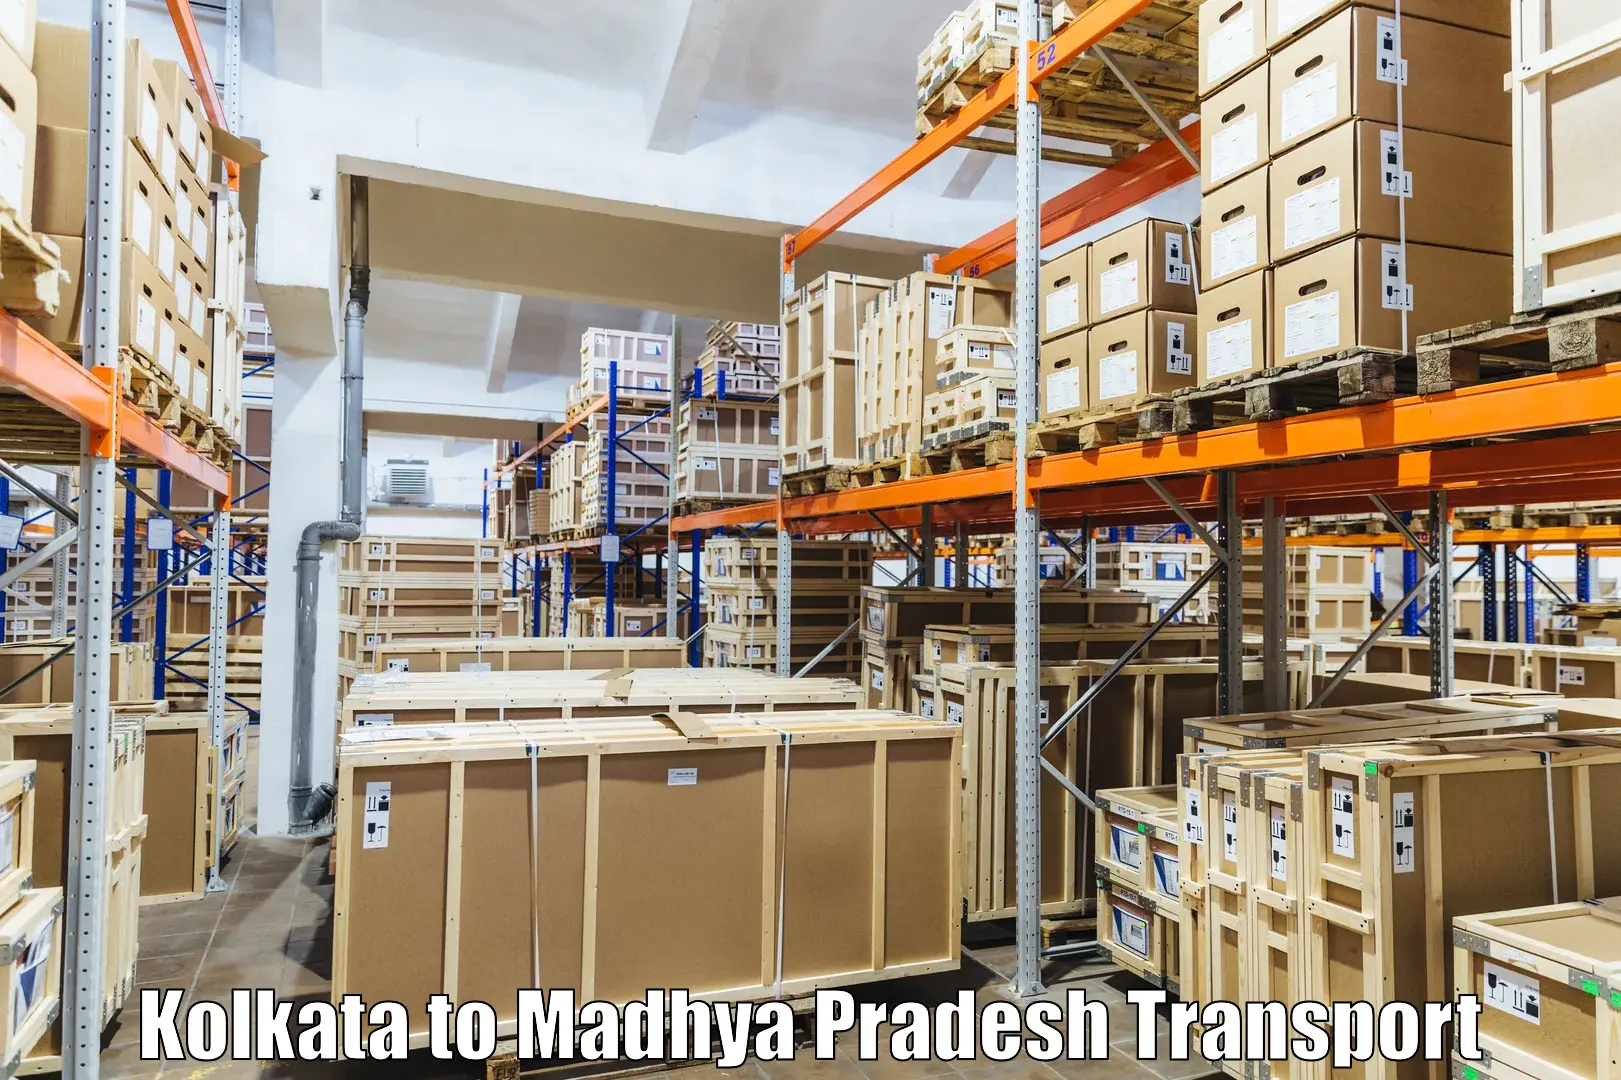 Transport in sharing in Kolkata to Sitamau